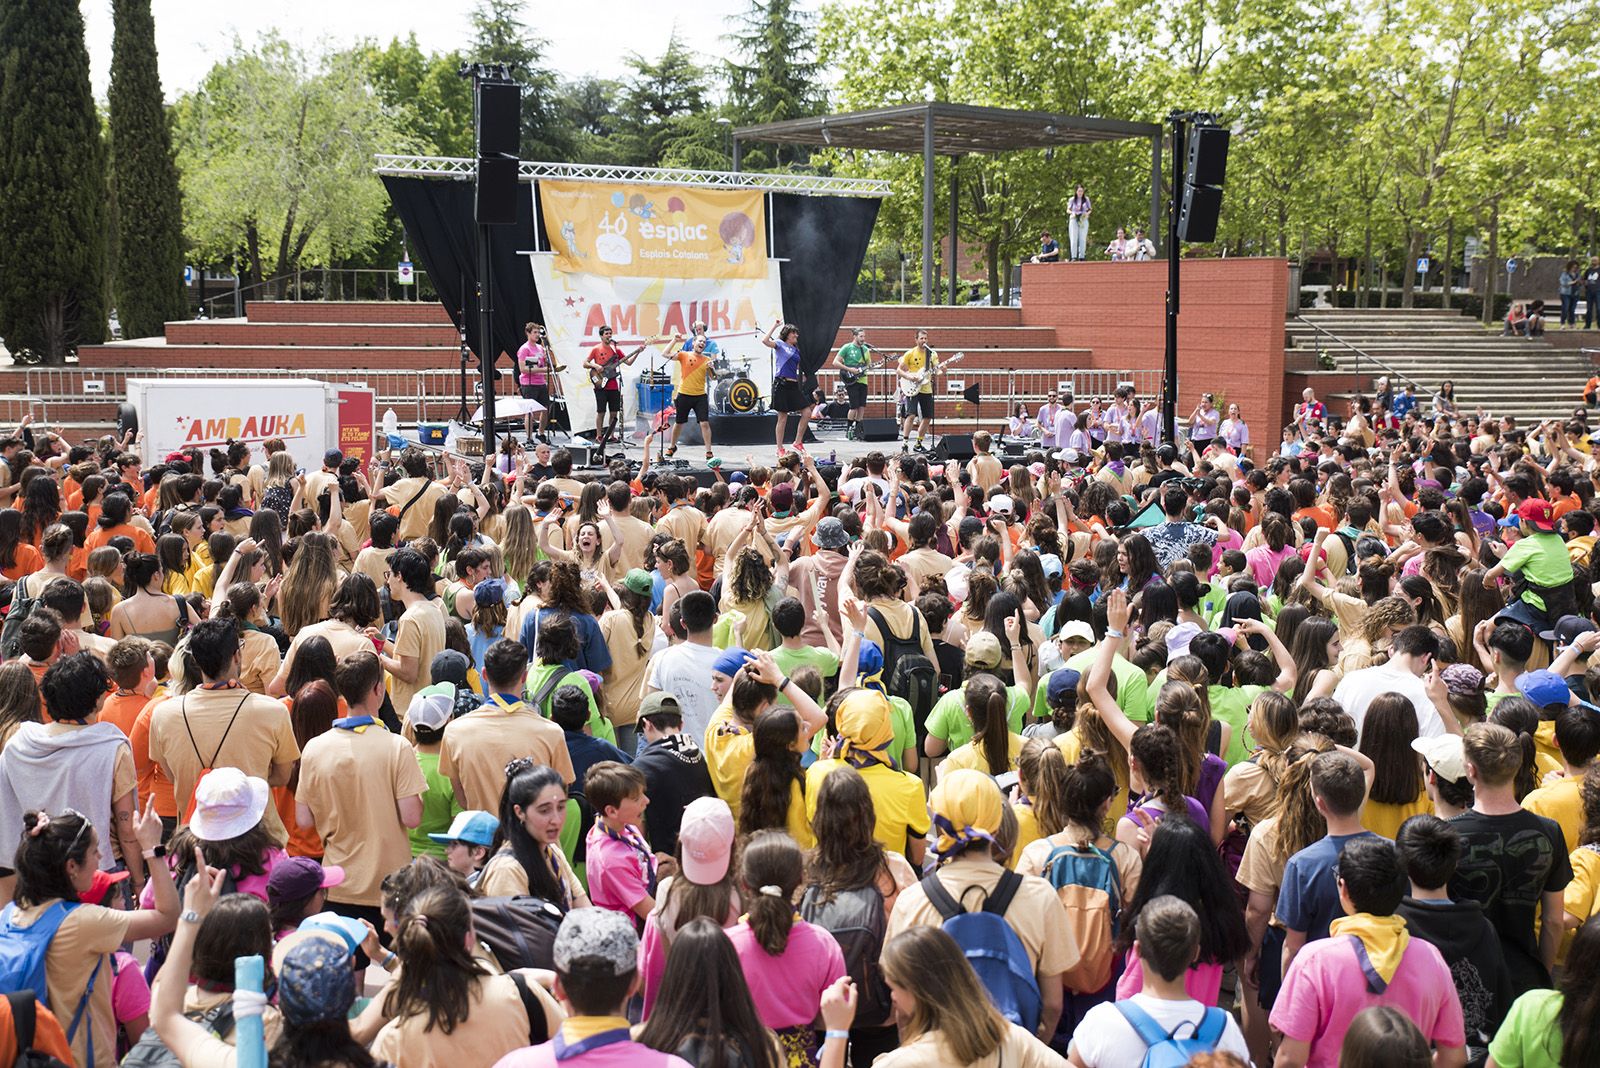 Sant Cugat va acollir més de 3.000 joves en l'edició d'enguany de l'Esplaiada, el colofó de la qual va ser en un acte unitari. FOTO: Bernat Millet